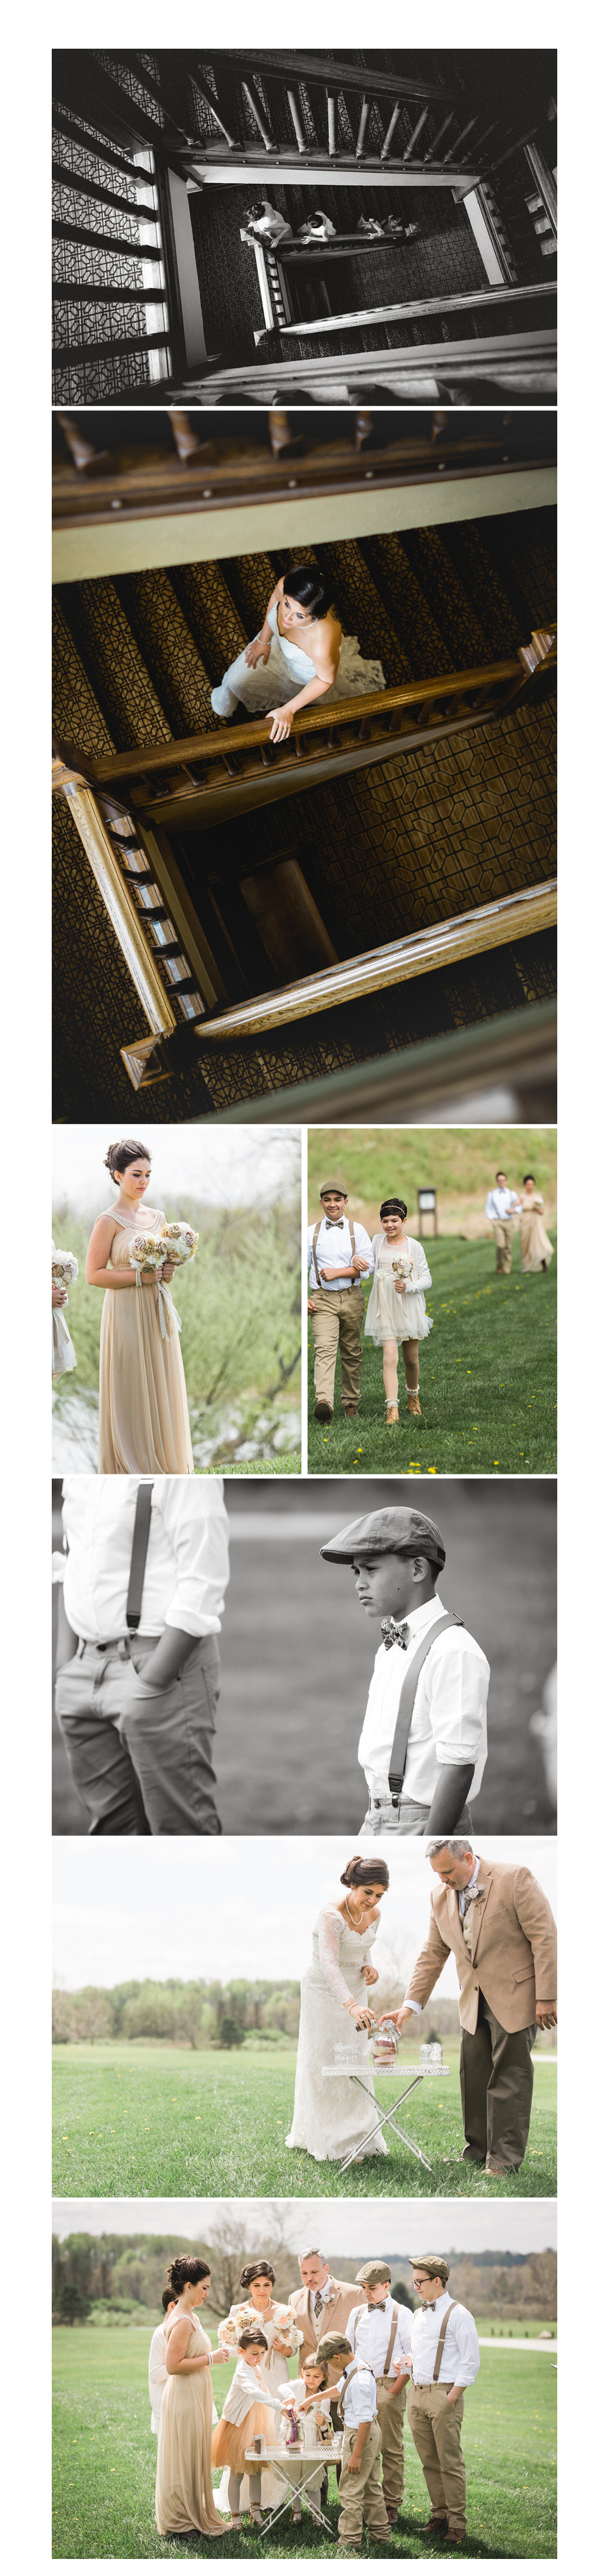 Wedding Photography Blog Image